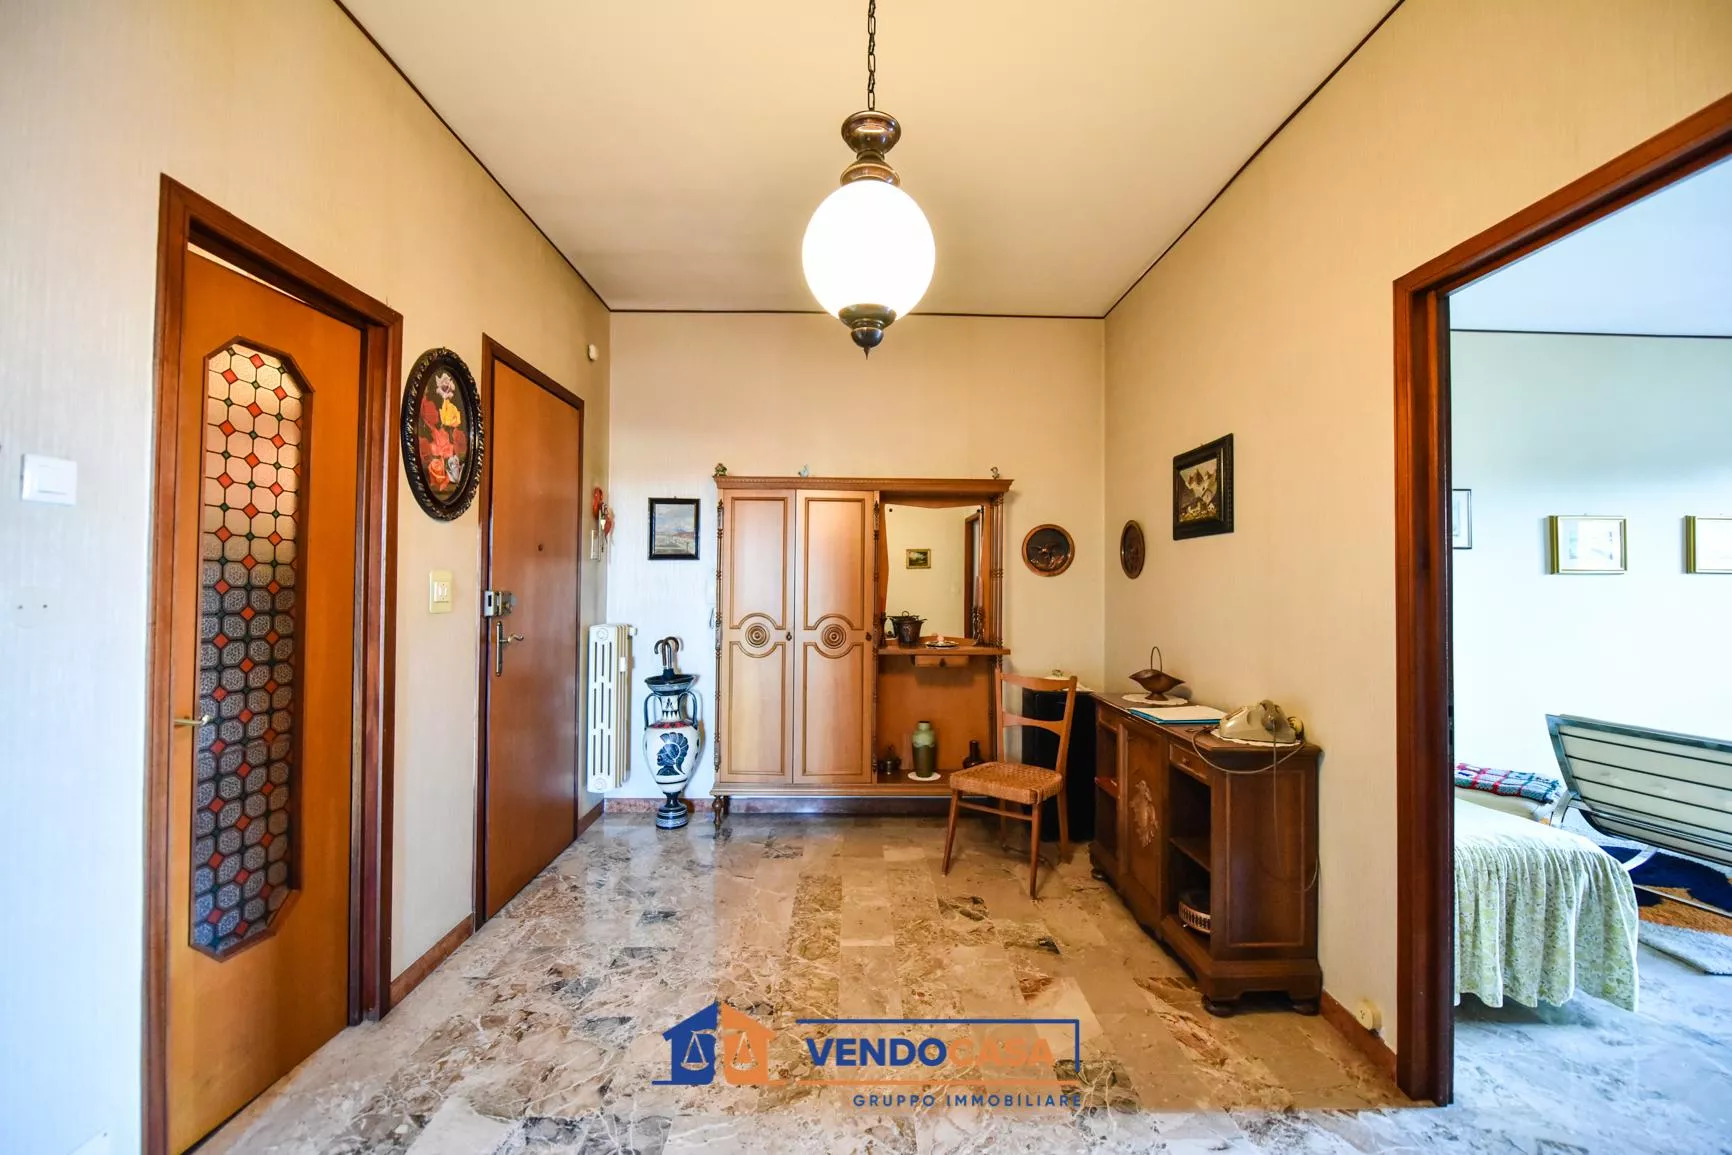 Immagine per Appartamento in vendita a Villastellone via Carbone 20